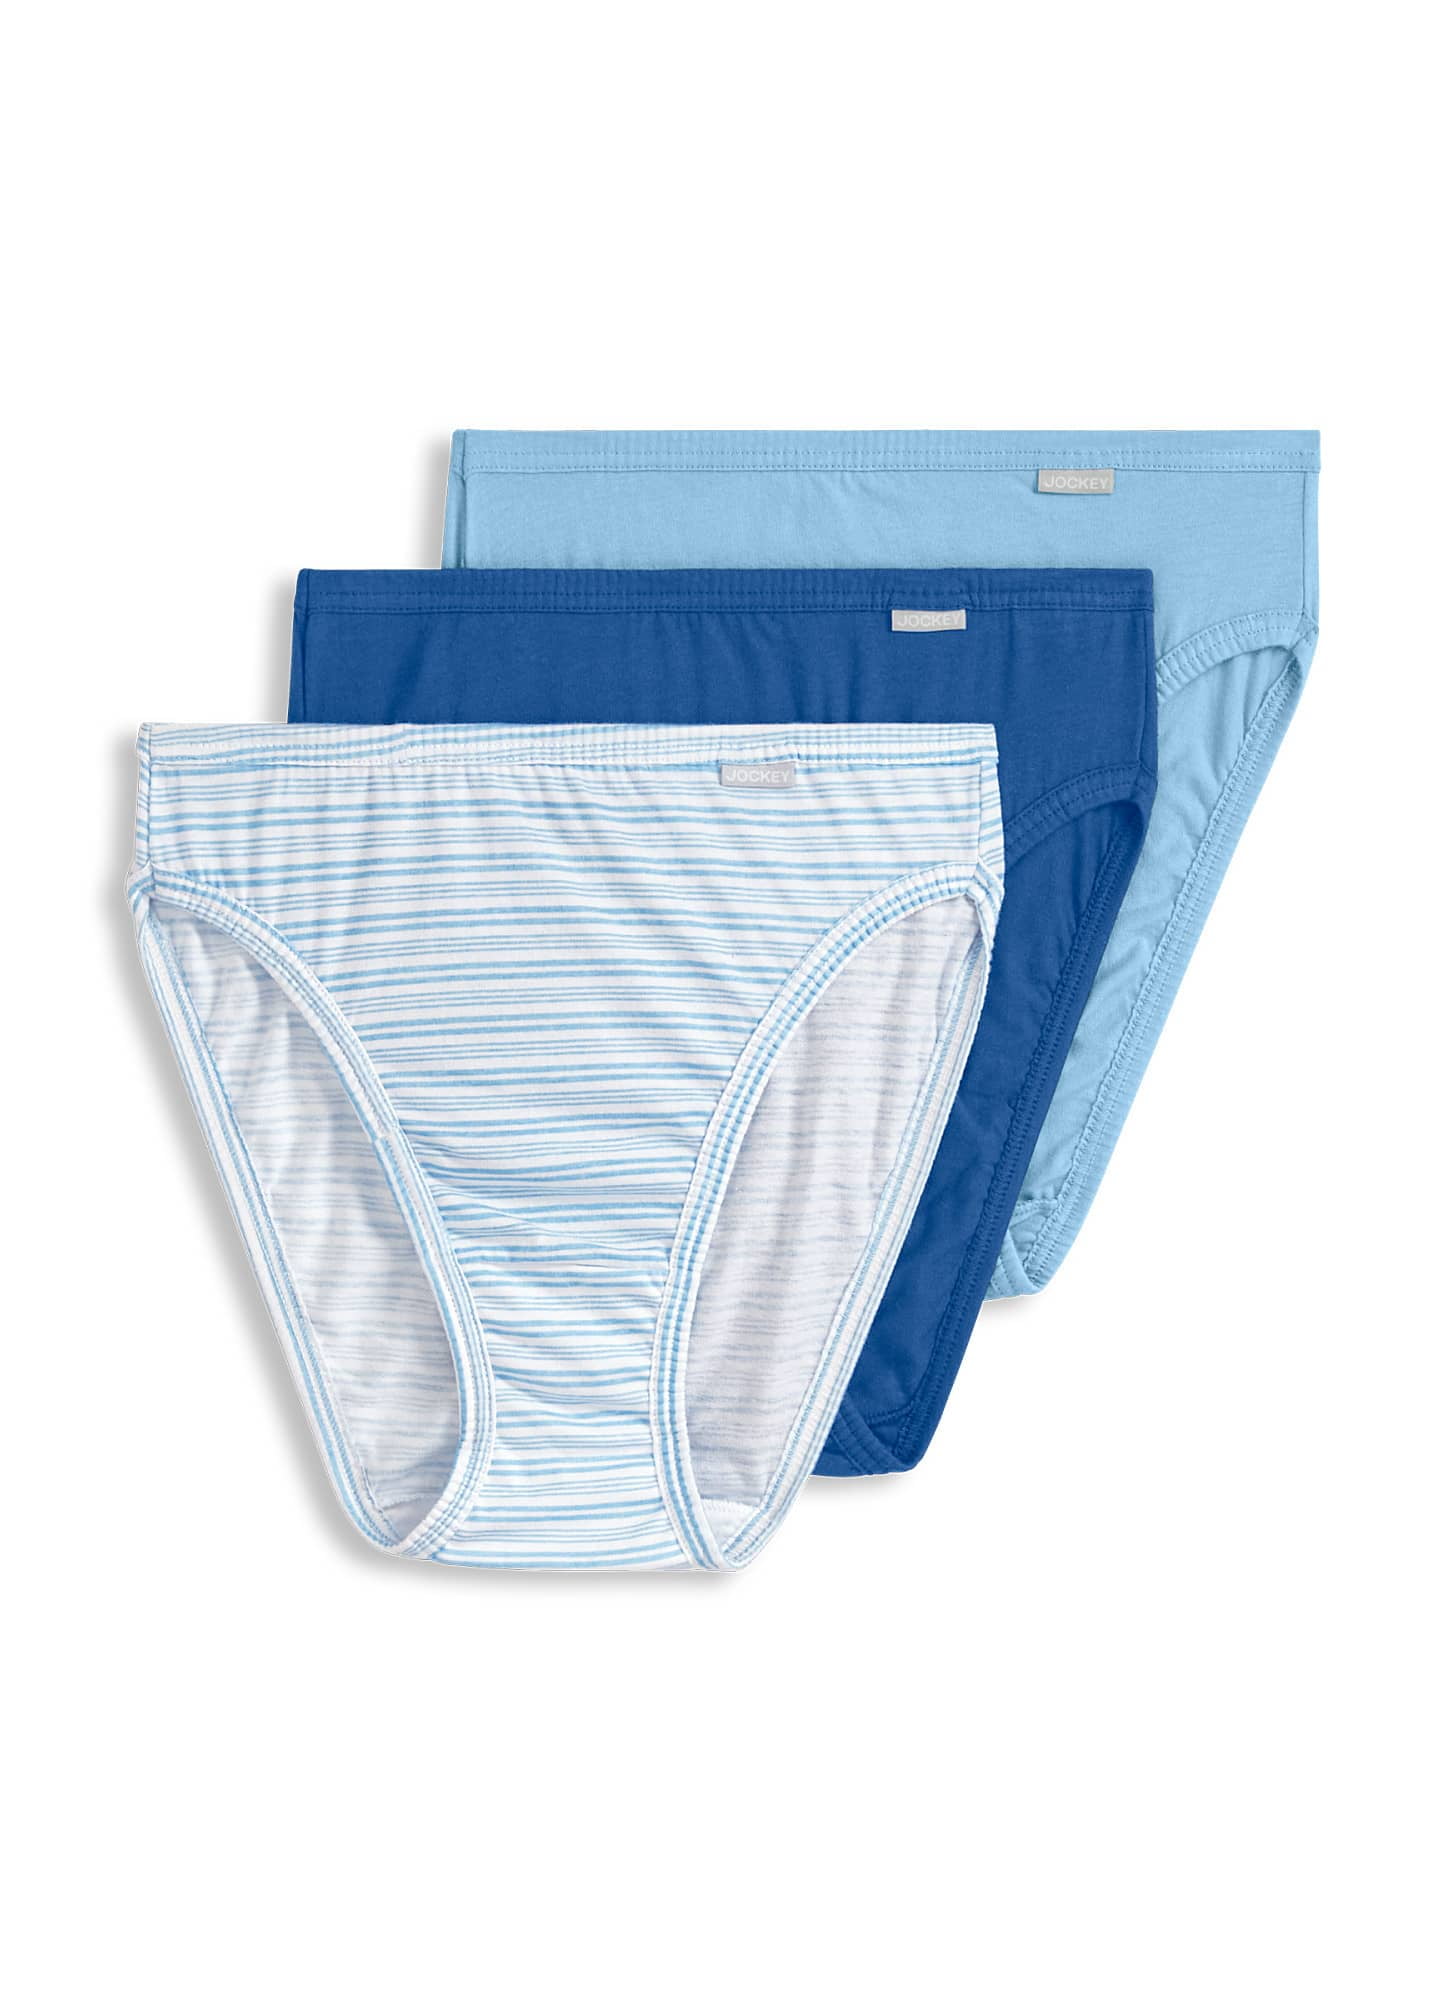 Jockey® Plus Size Elance® French Cut Women's Underwear, 3 pk - Fred Meyer